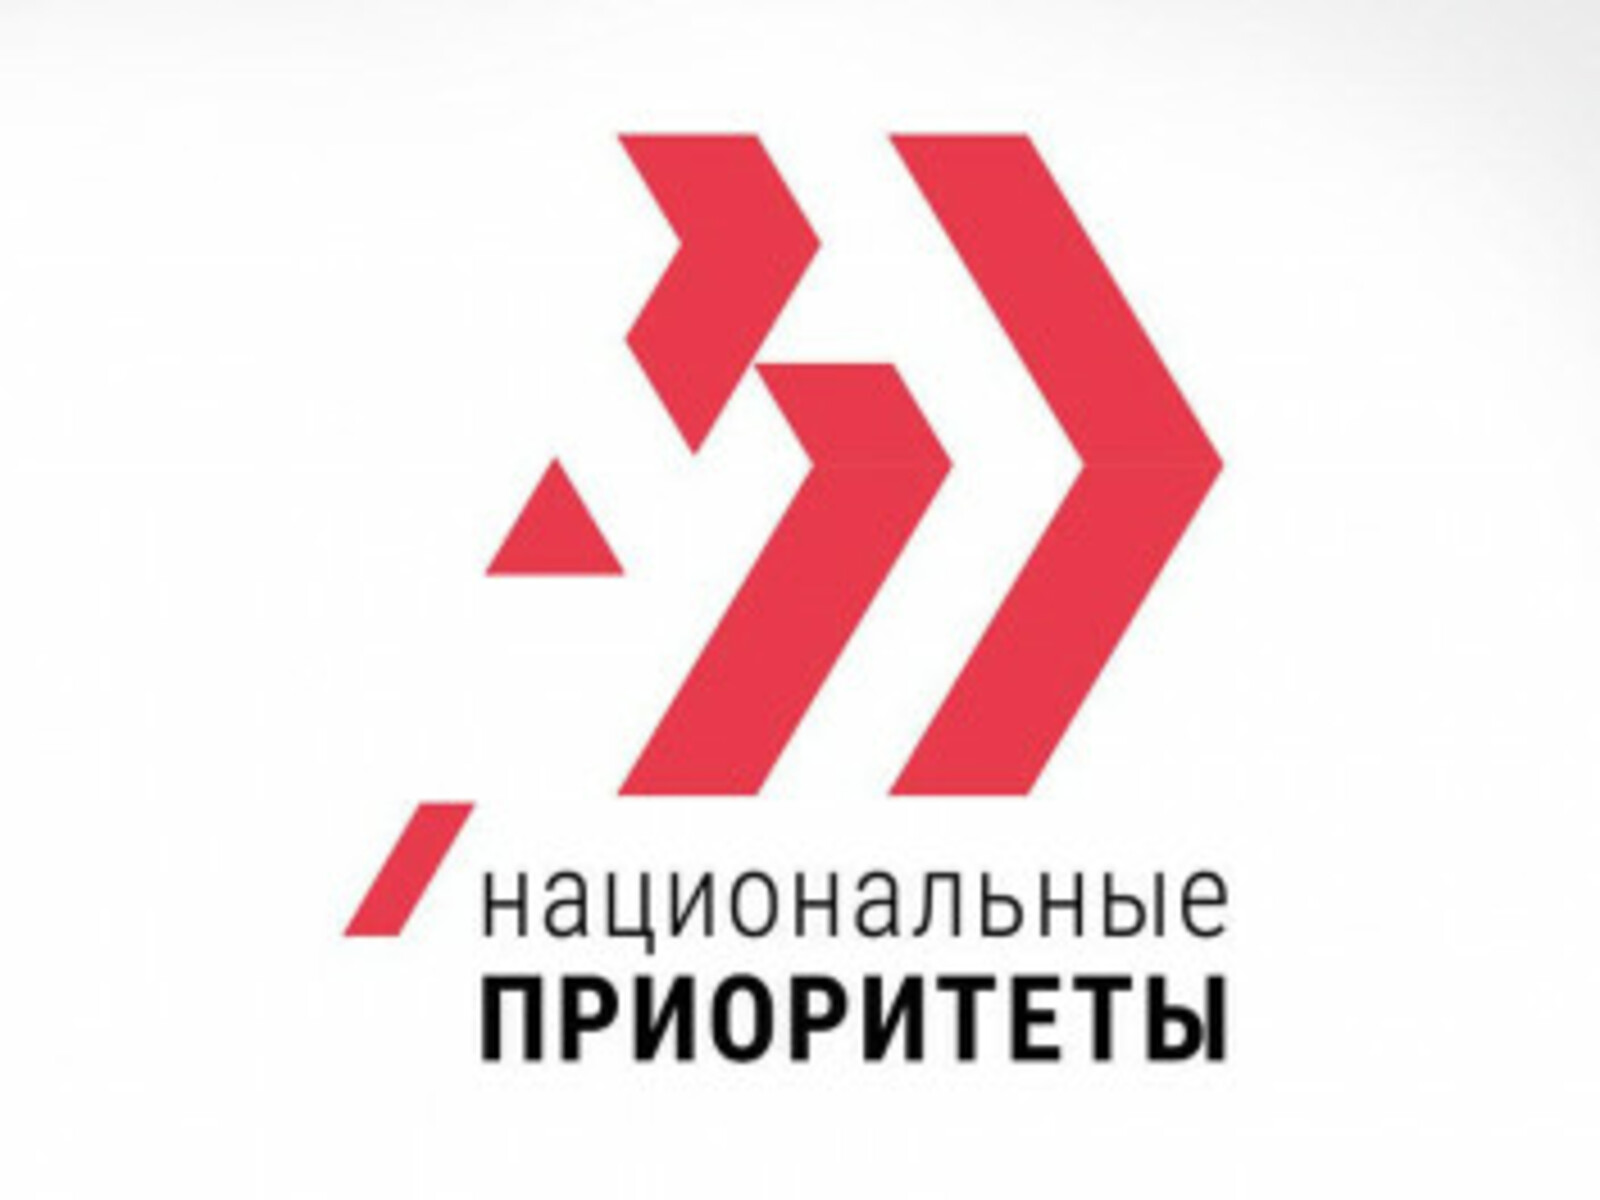 Башкортостан сформирует машиностроительный образовательный центр в рамках стратегической инициативы «Профессионалитет»